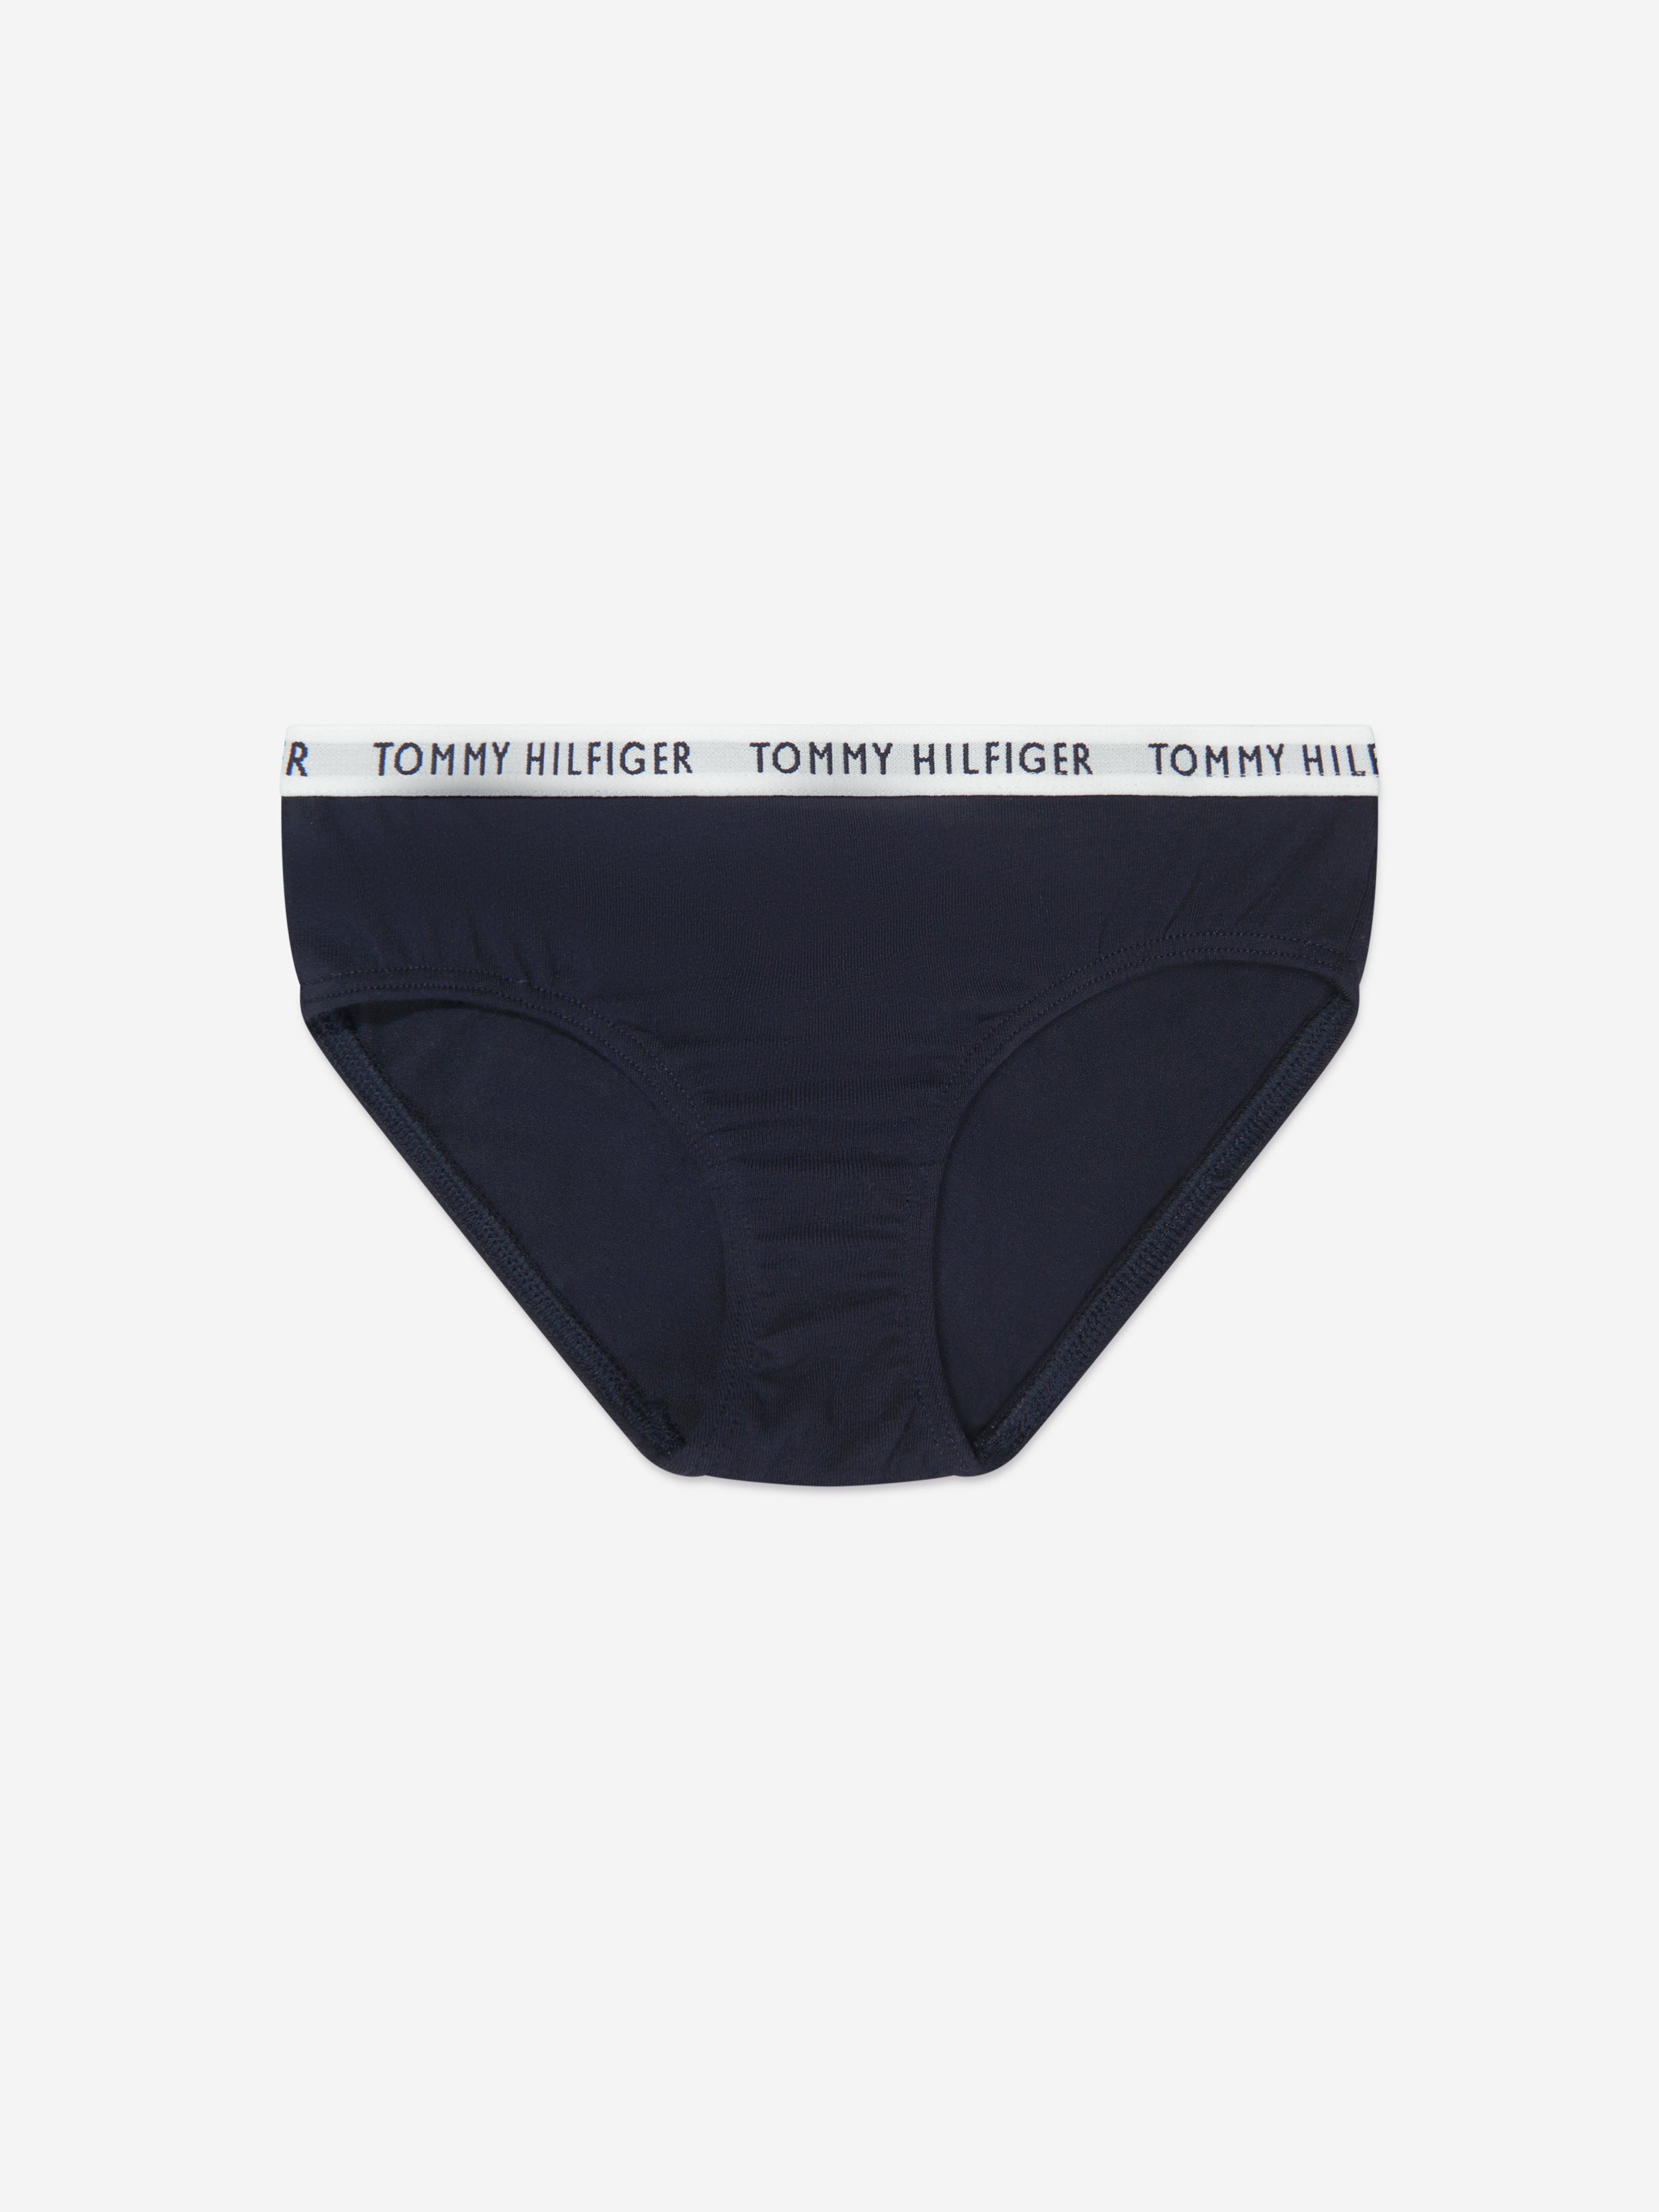 Tommy Hilfiger Women's Cotton Thong Underwear Nigeria